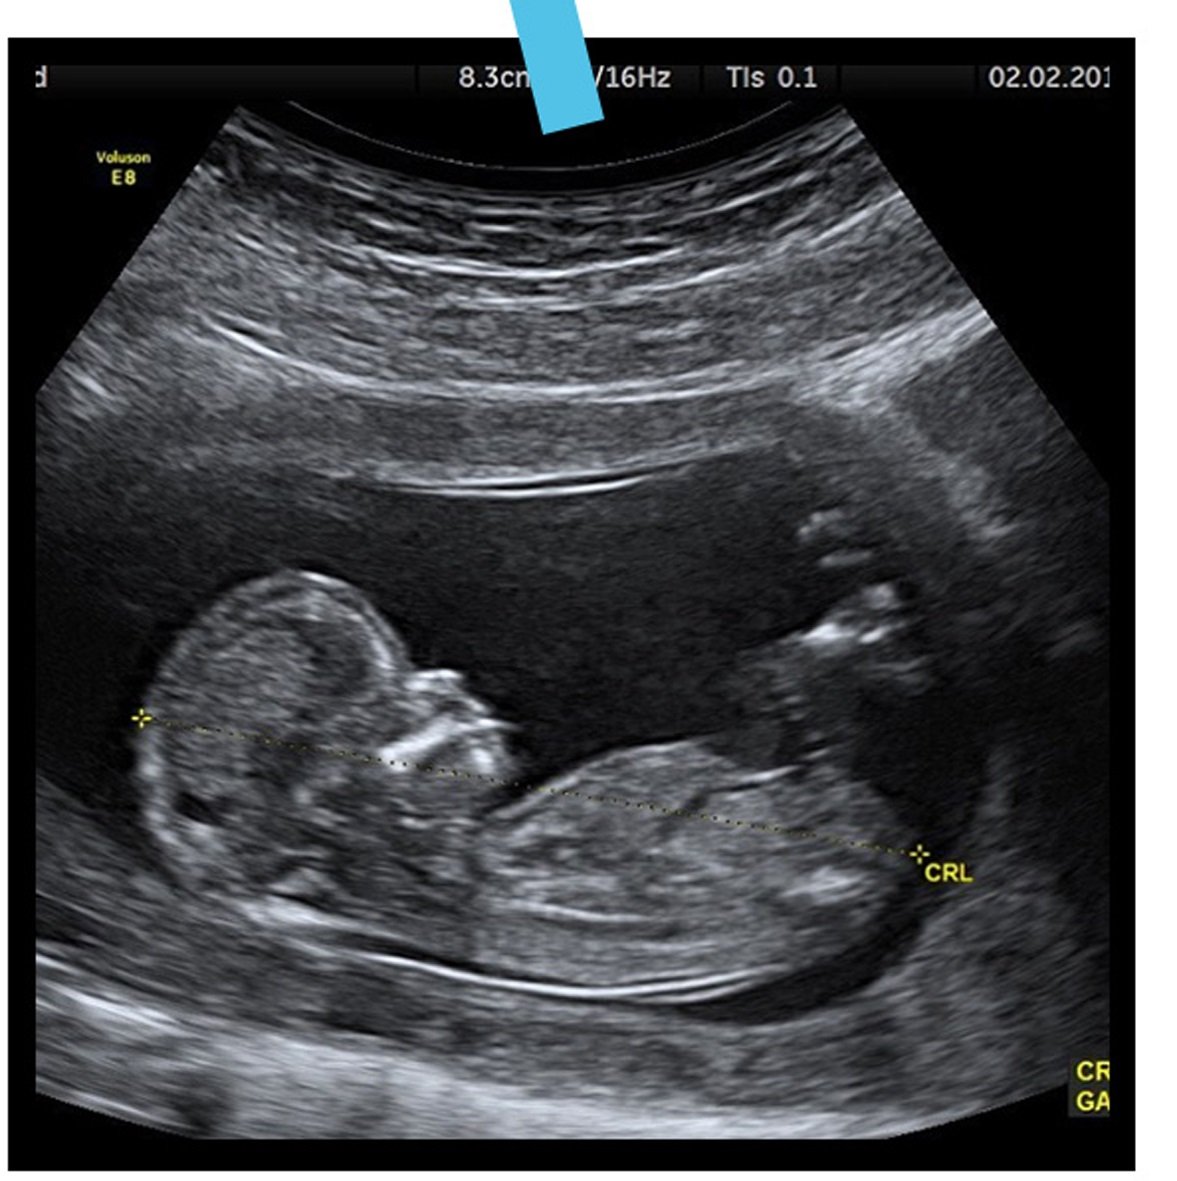 贾斯汀上传了一张很像超声波的照片，造成妻子海莉怀孕的谣言。